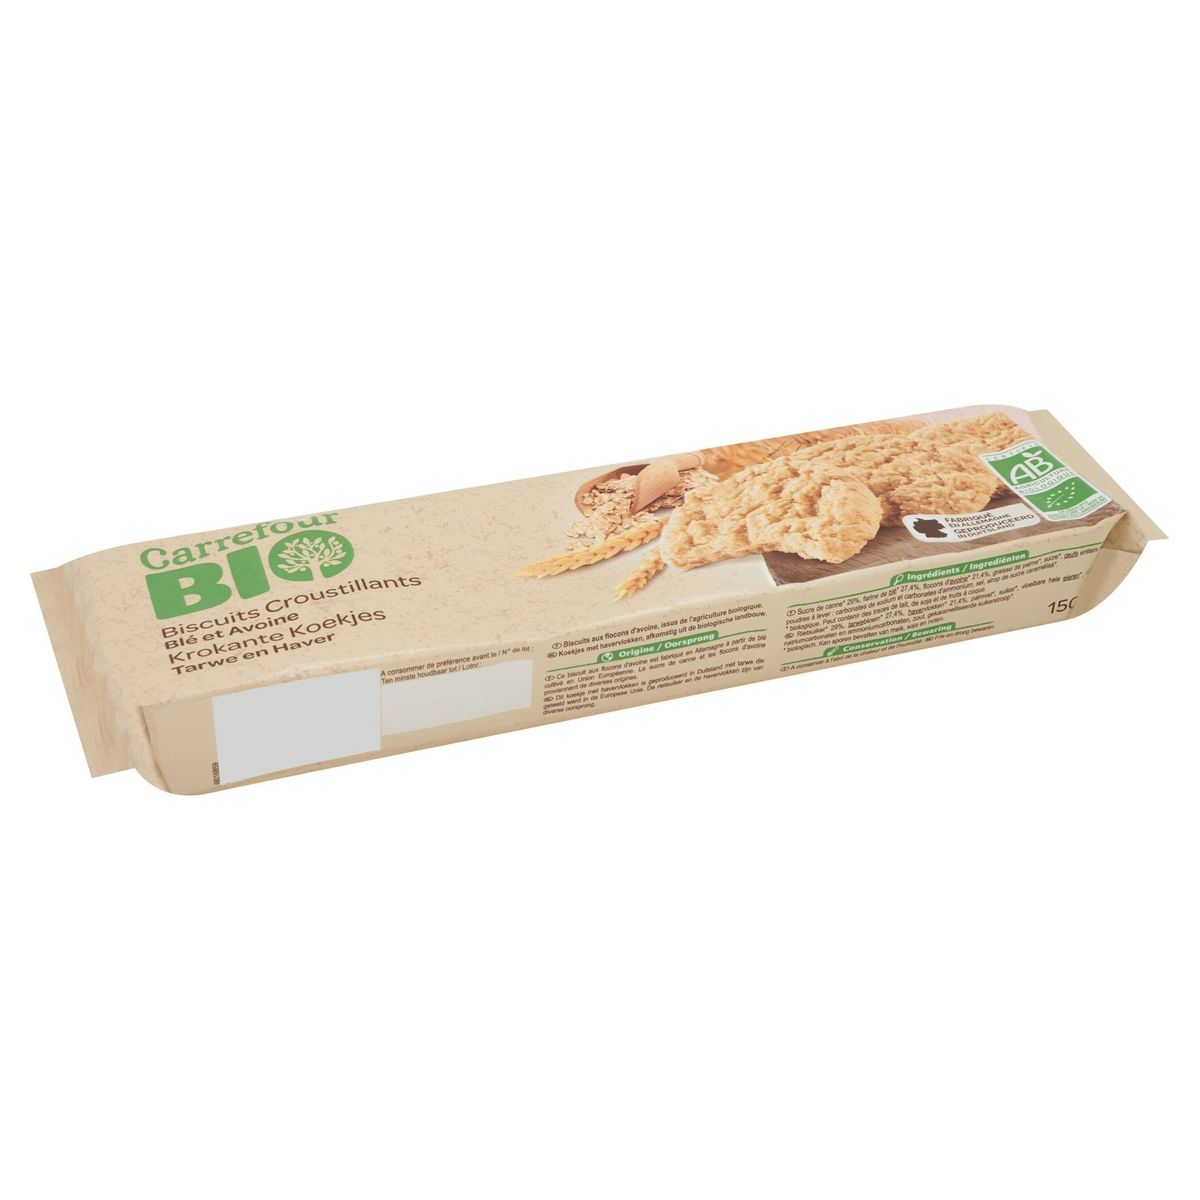 Carrefour Bio Biscuits Croustillants Blé et Avoine 150 g